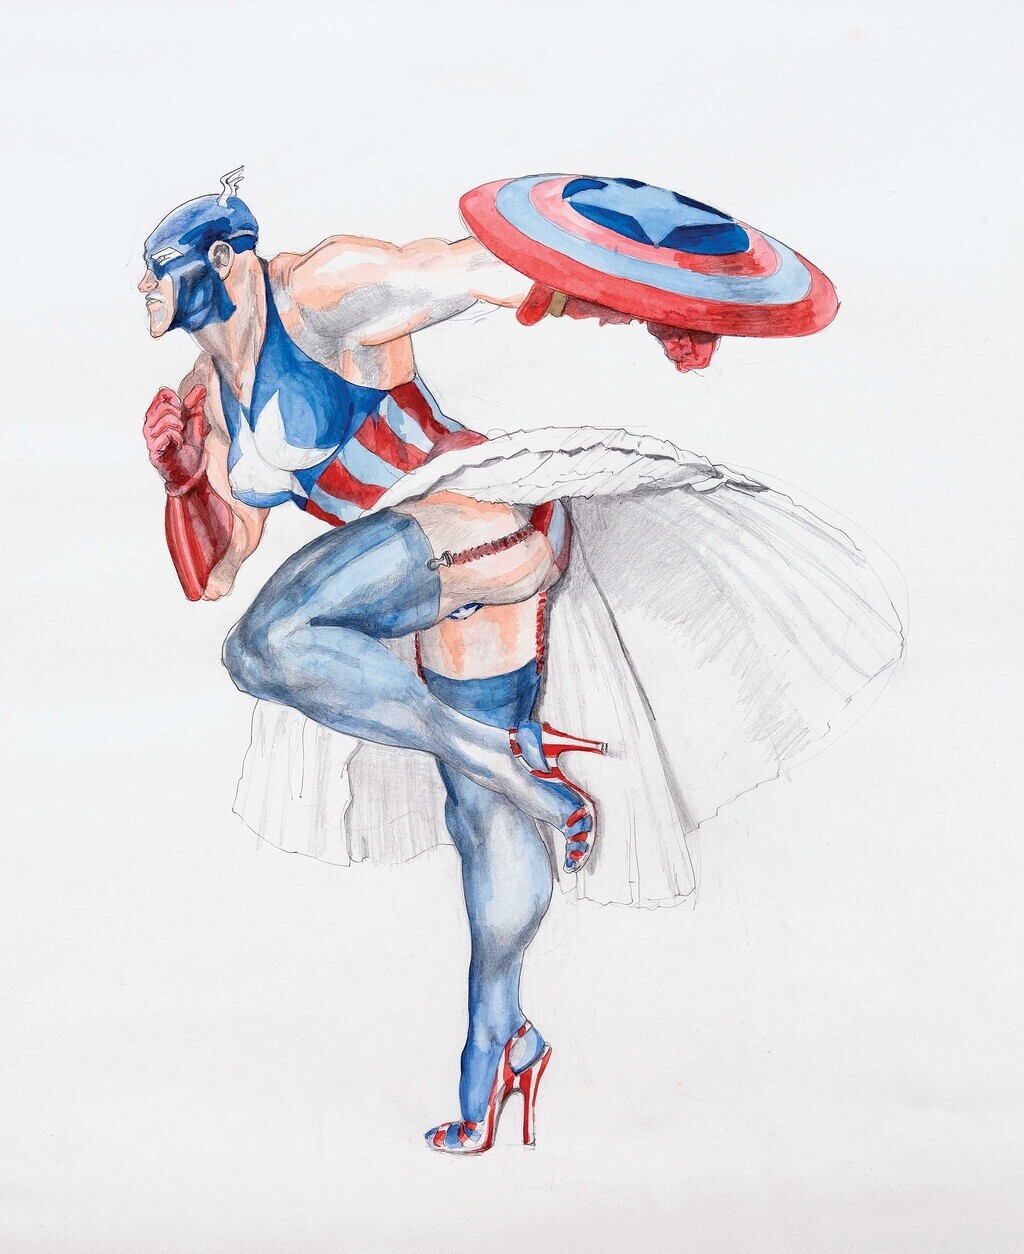 Margaret Harrison, Captain America II, 1997, © Collection particulière Courtesy Nicolas Krupp, Bâle (CH); www.e-flux.com